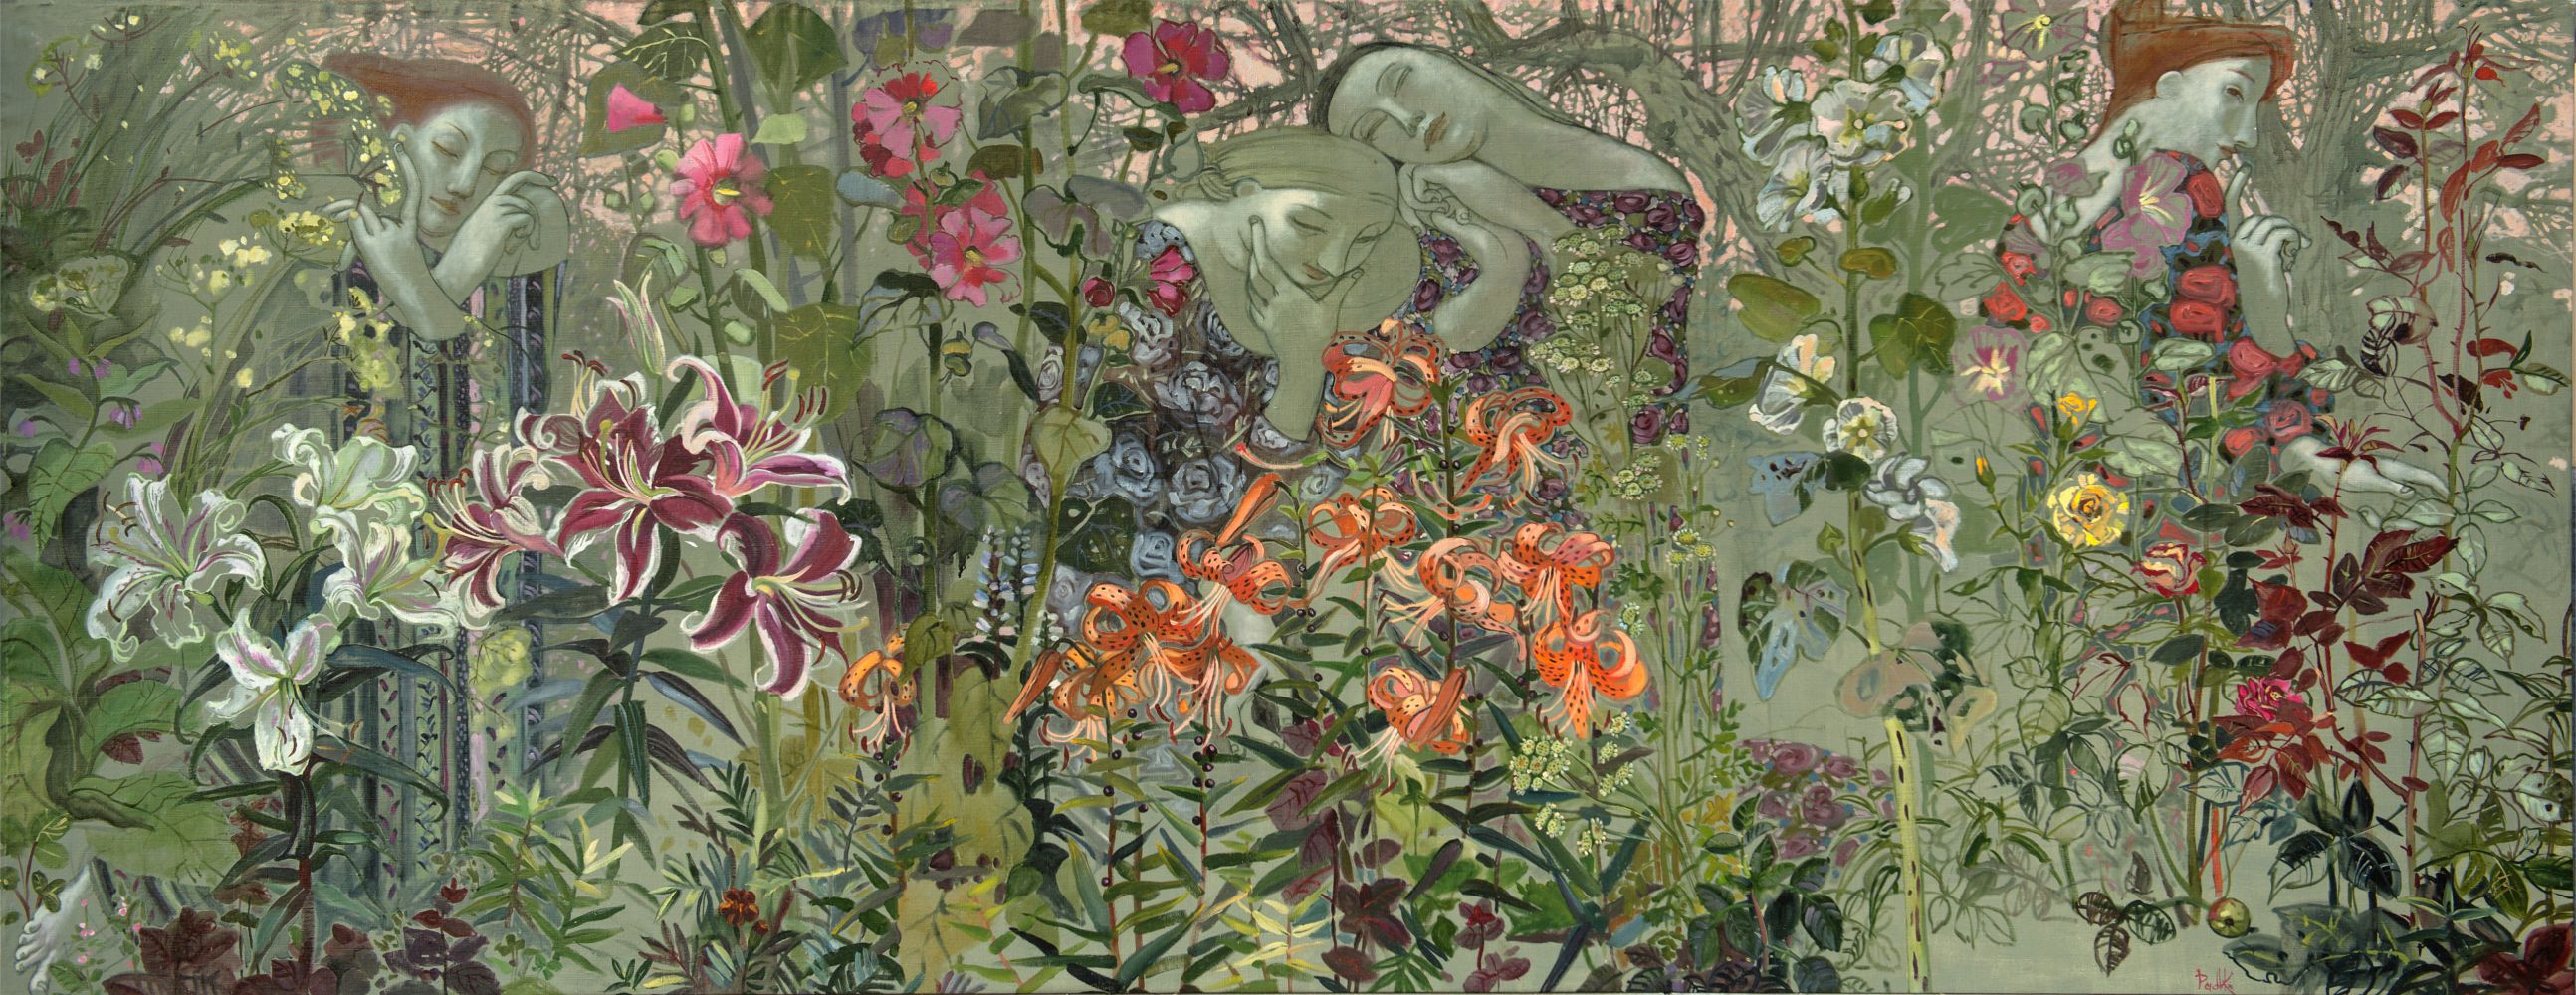 Korzh-Radko Ludmila, Ve staré zahrady, 2014, olej na plátně, 130 x 320